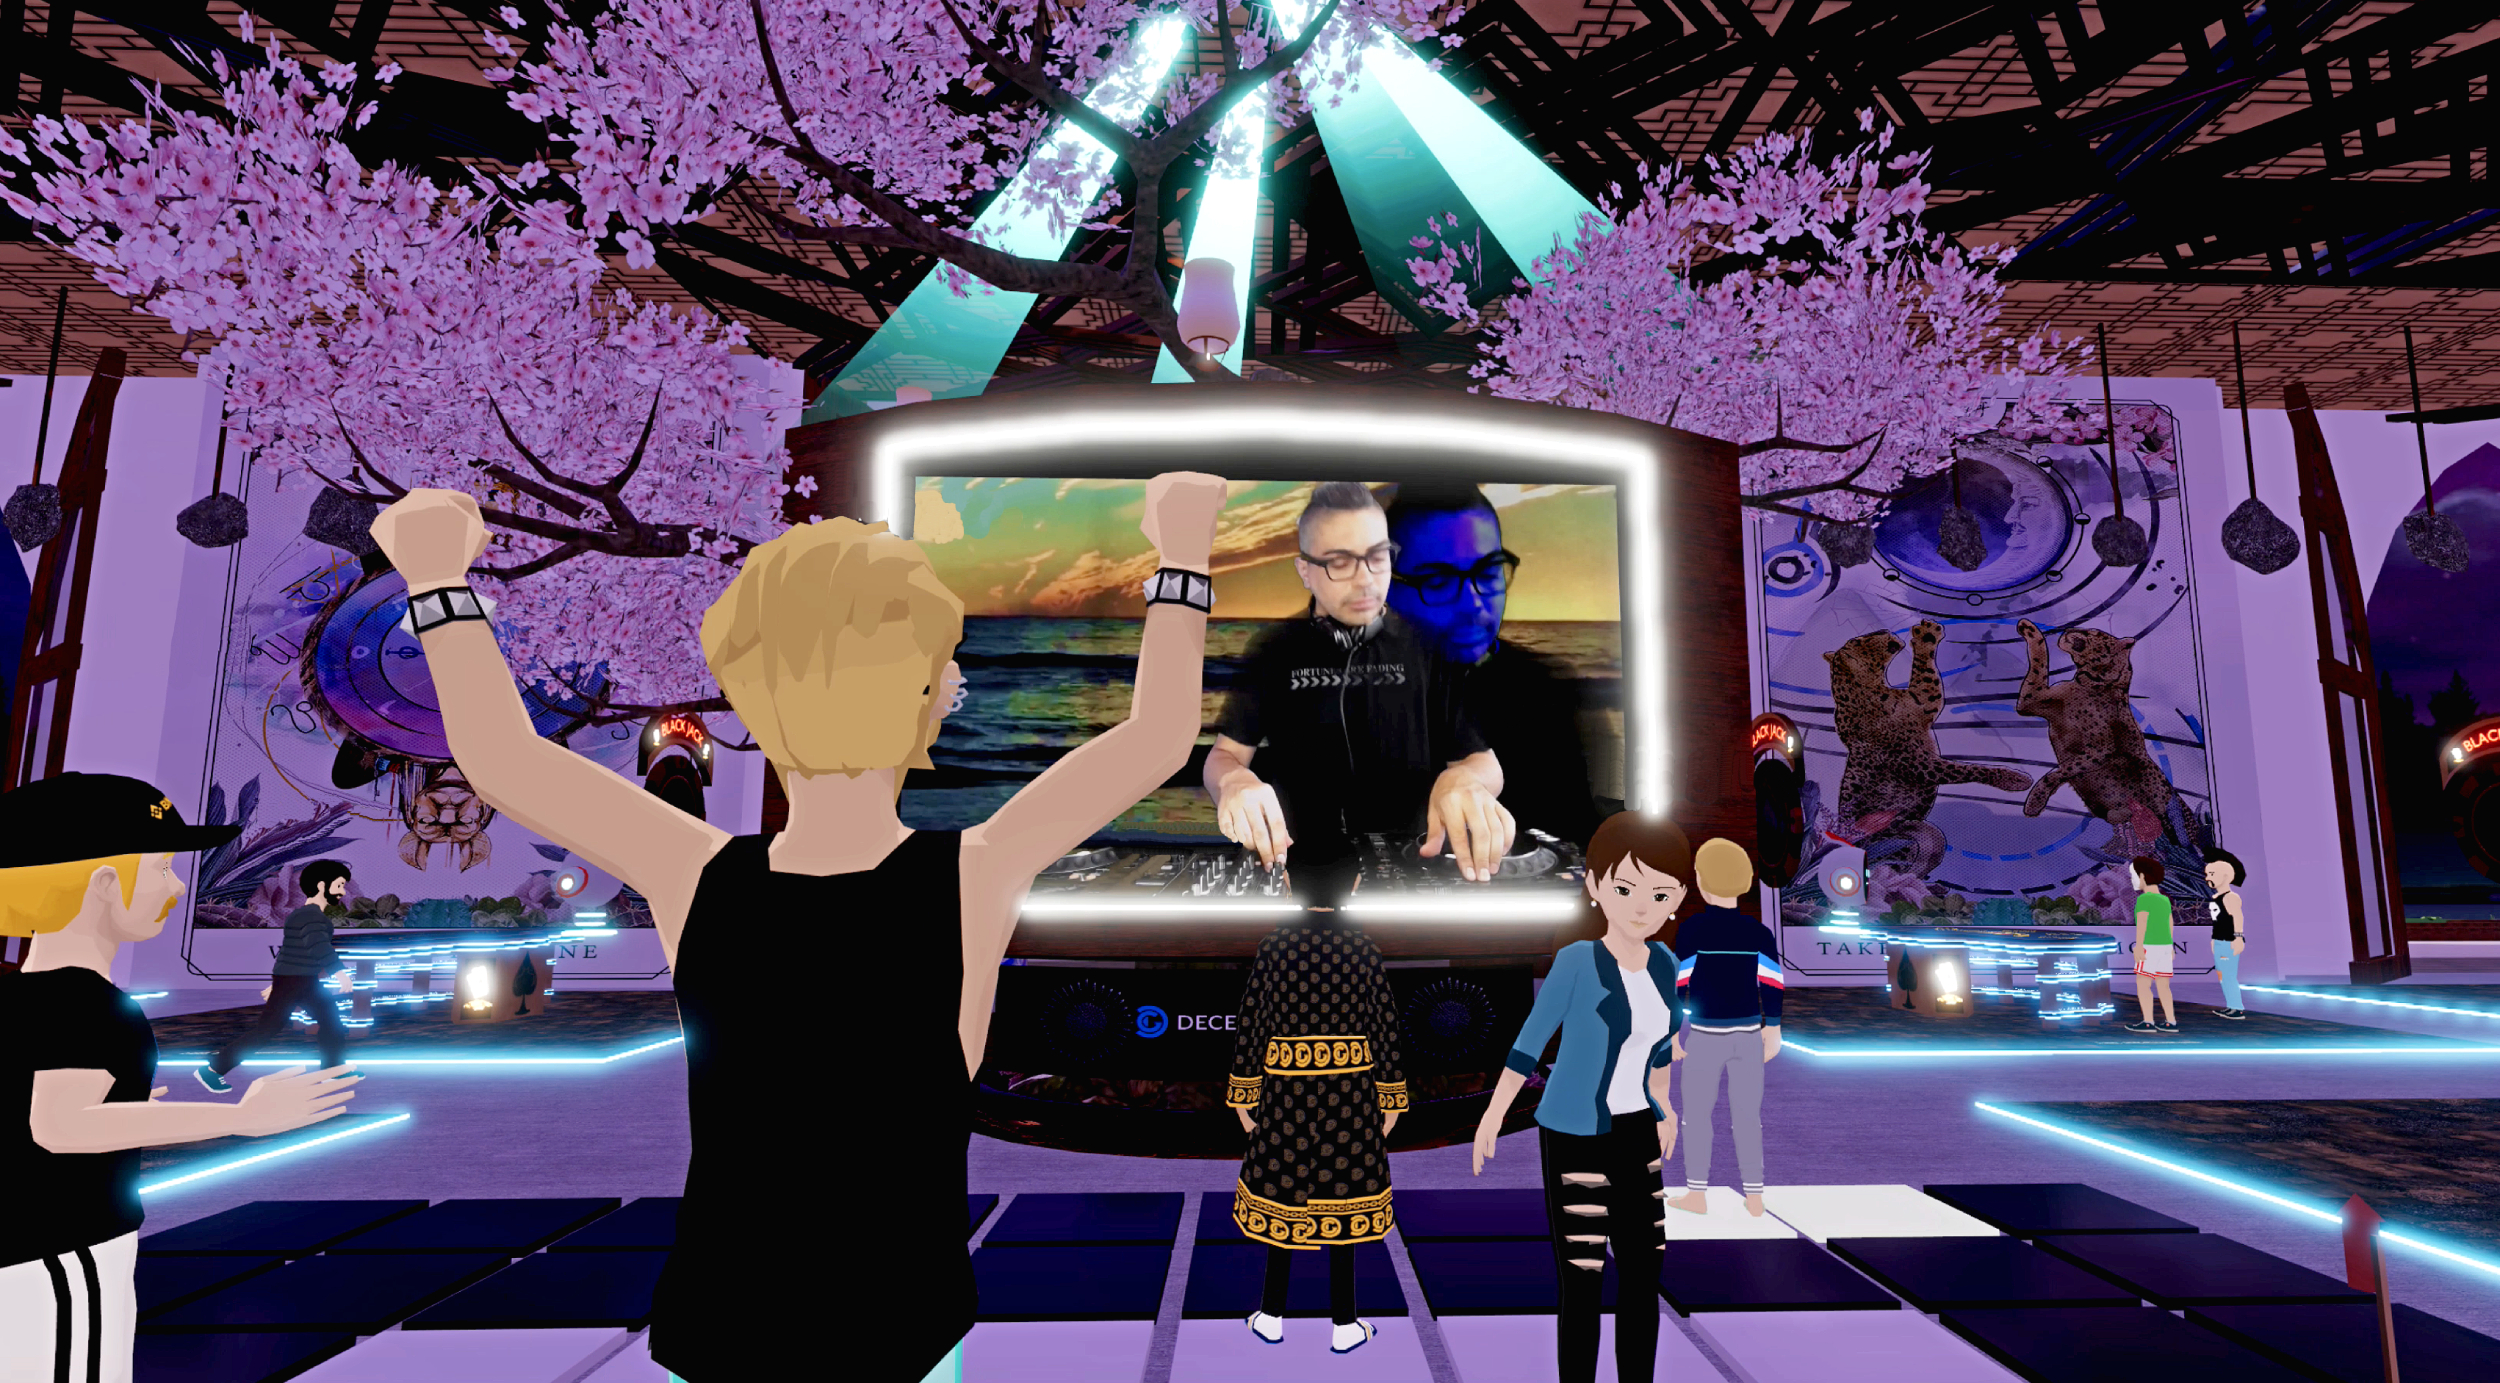 Fiesta de avatares virtuales en la discoteca amnesia ibiza virtual en Decentraland